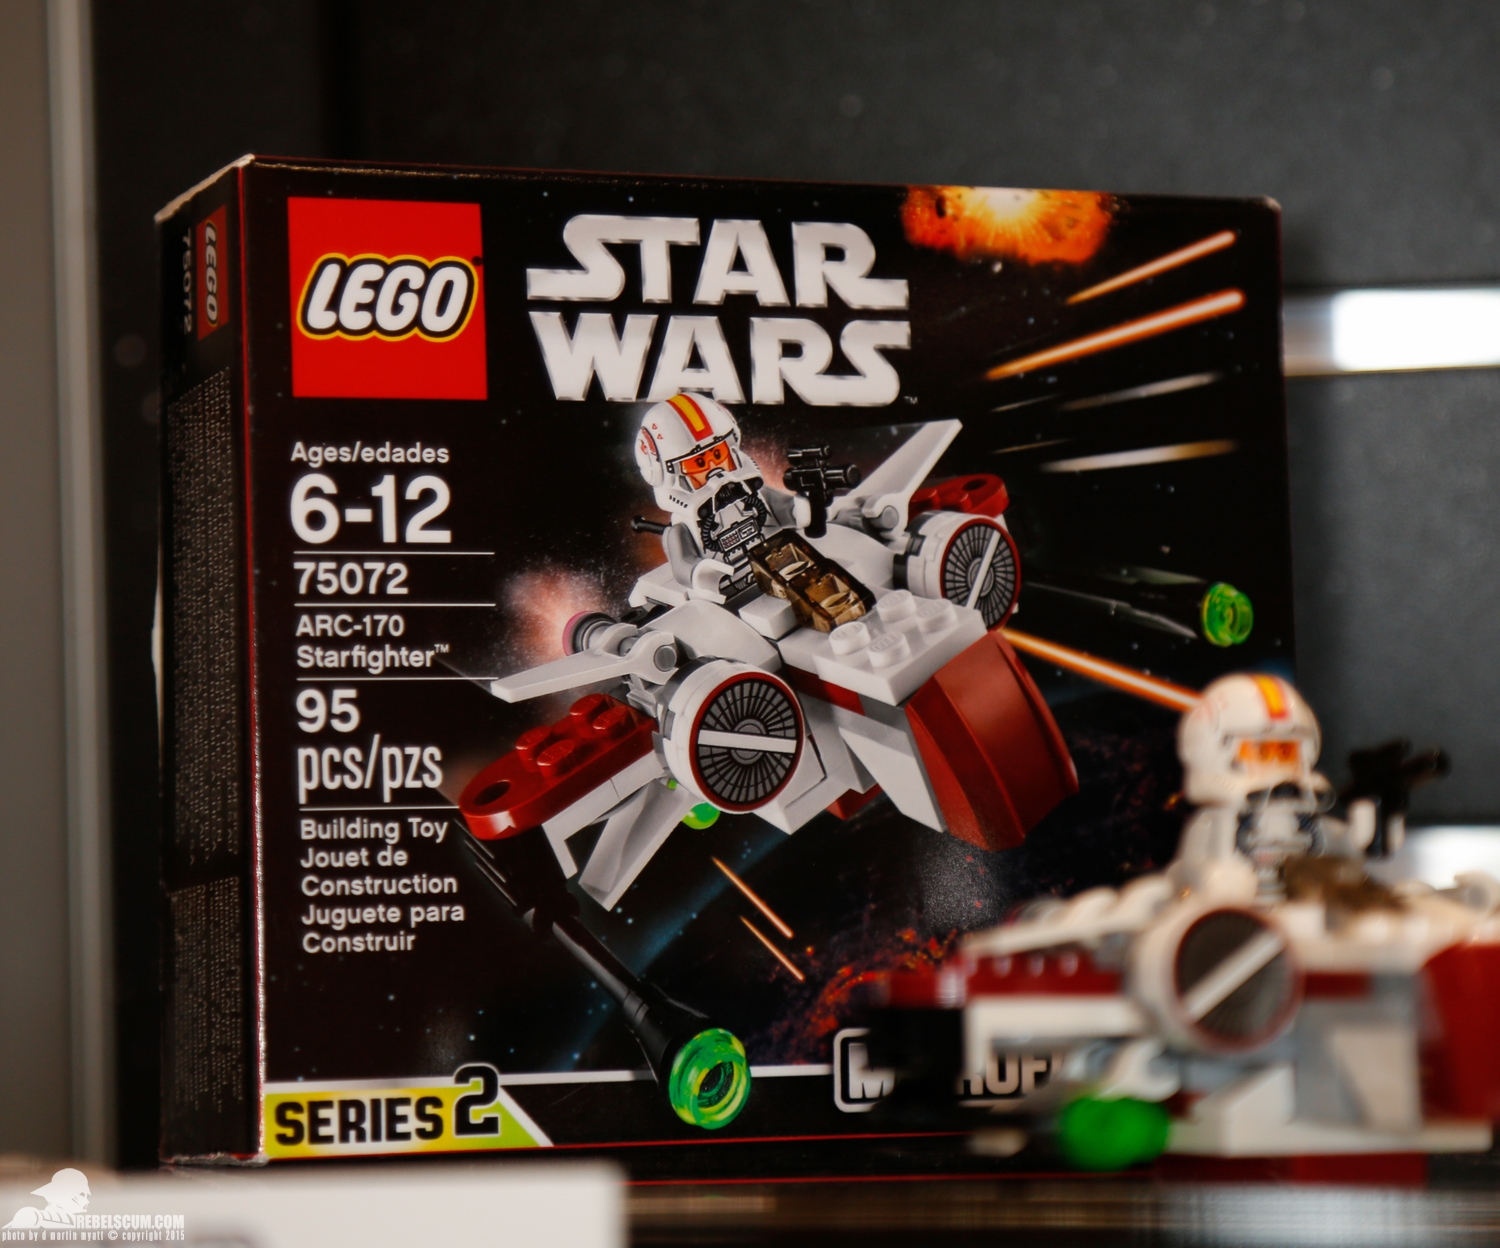 2015-International-Toy-Fair-Star-Wars-Lego-005.jpg